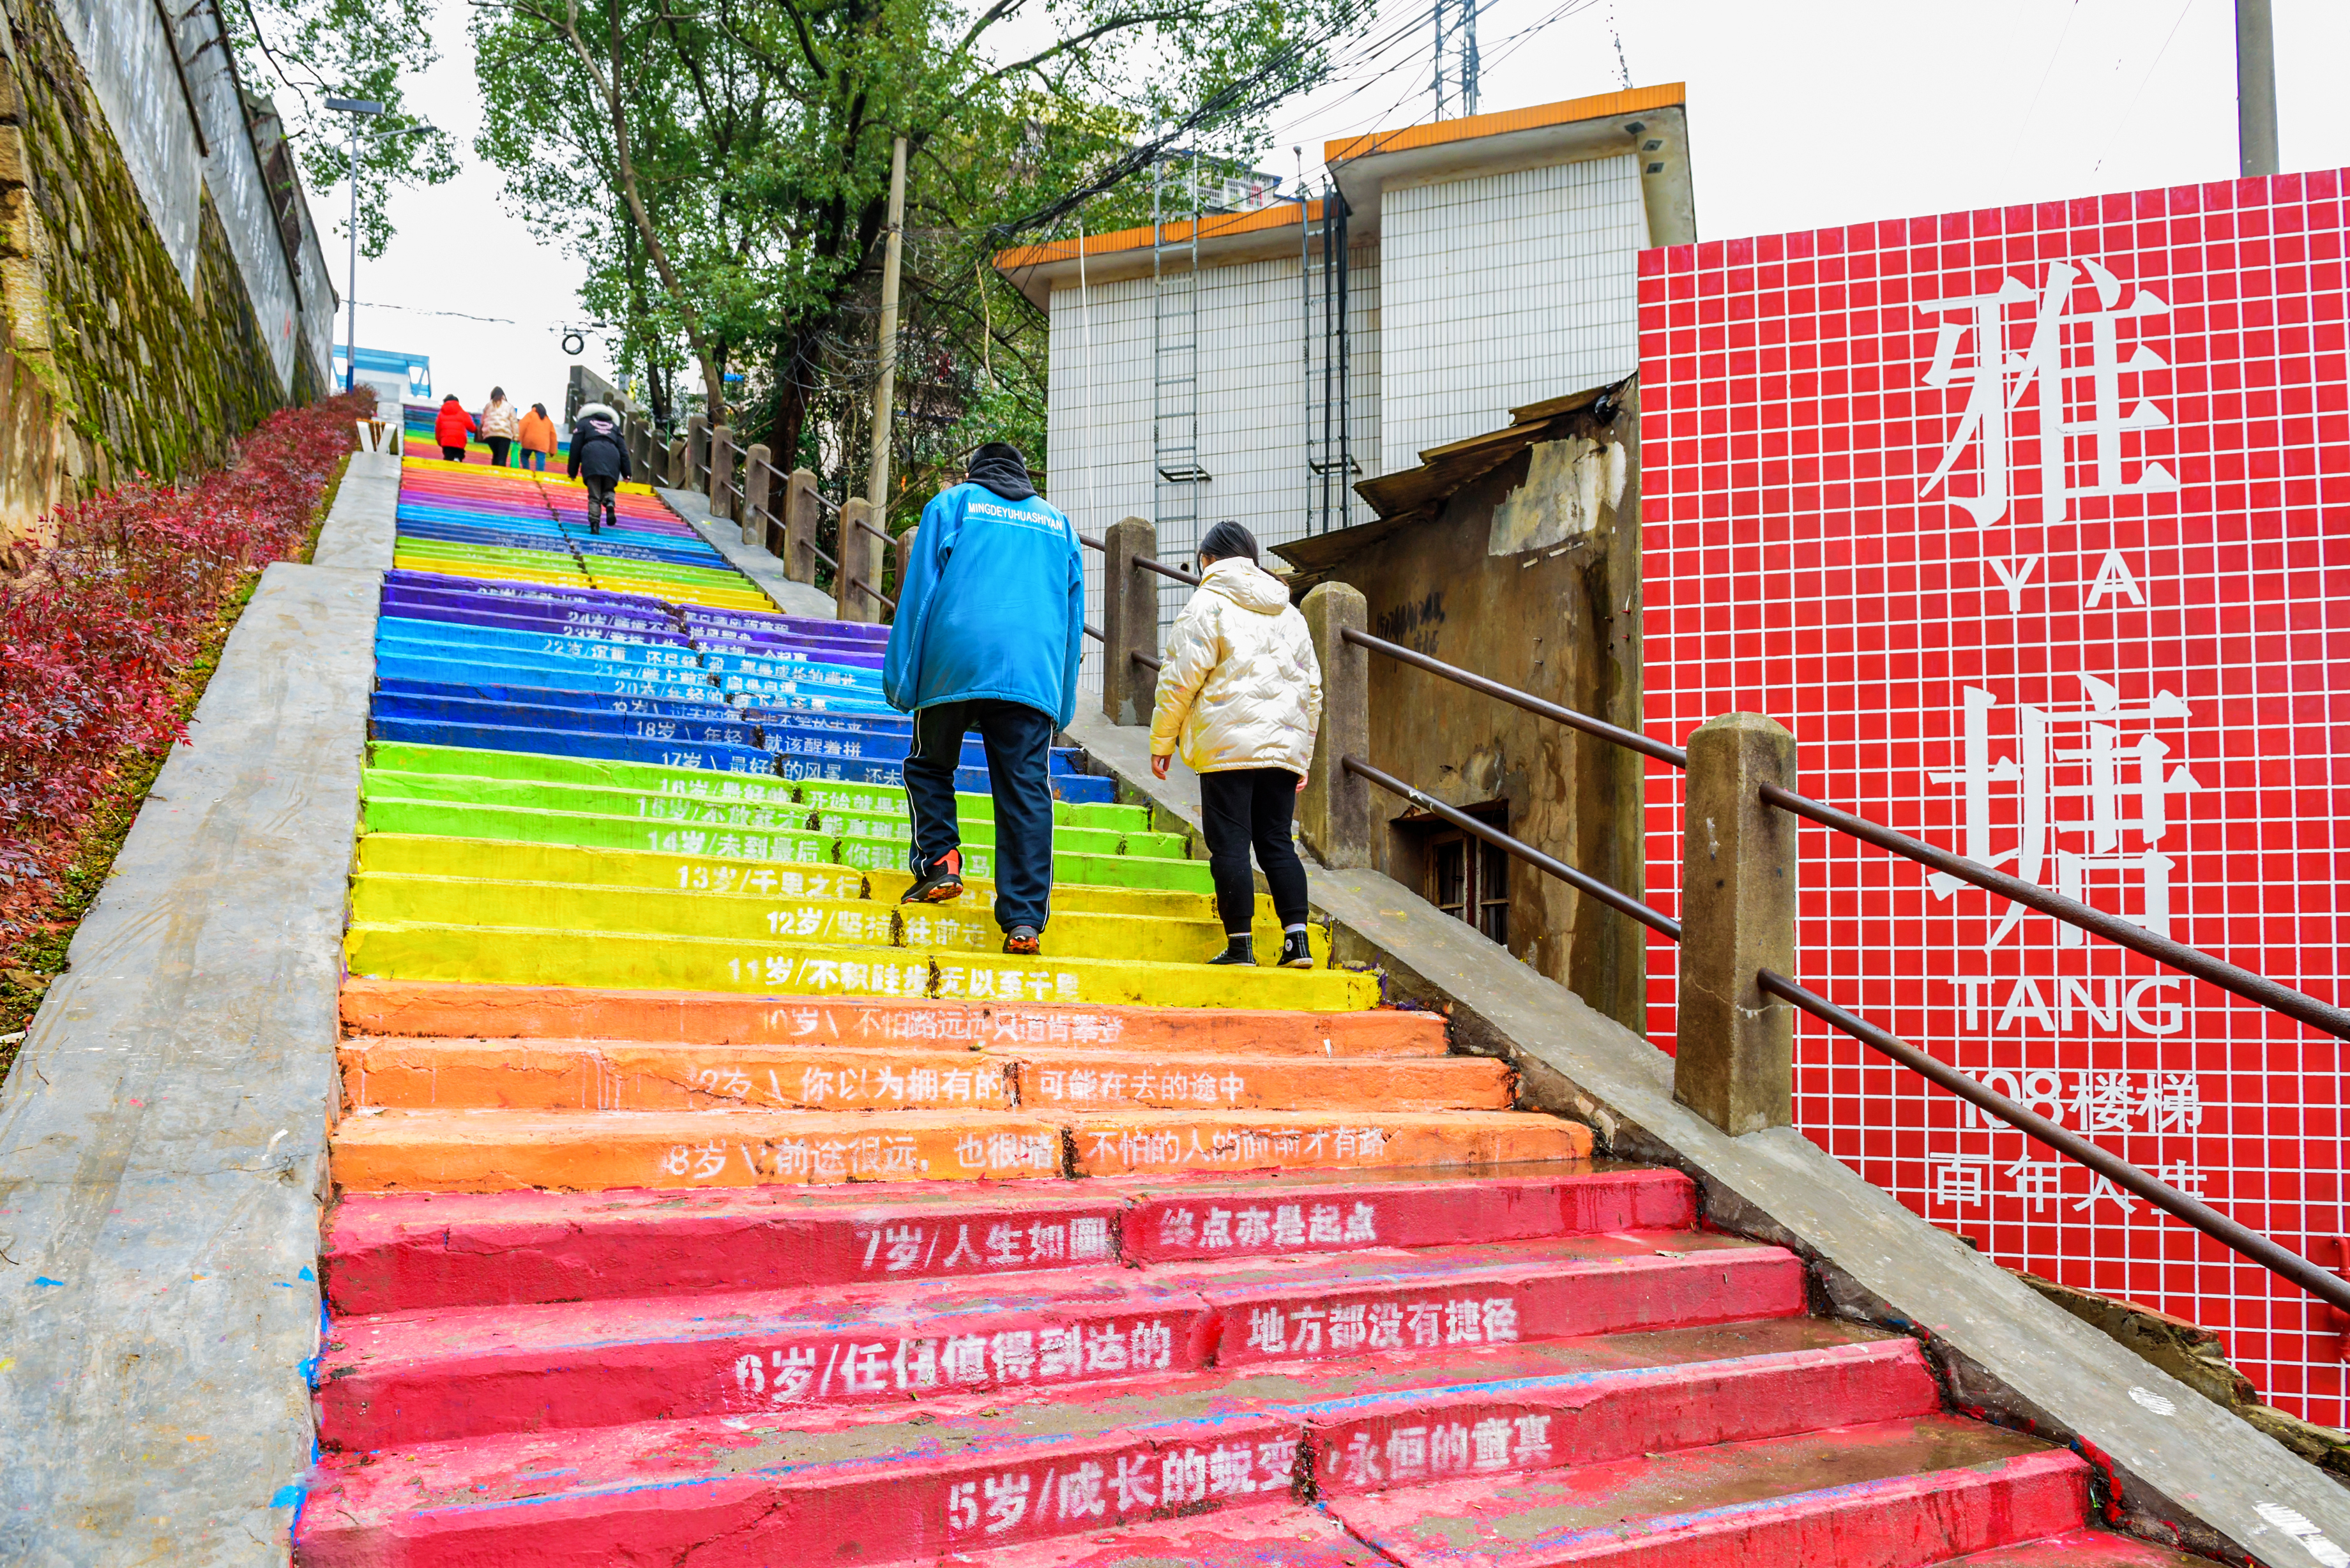 雨花区雅塘片区内， 108级彩虹楼梯不仅成为一道风景线，还带给人们成长的力量。图片除特别署名外均为长沙晚报全媒体记者 陈飞 摄